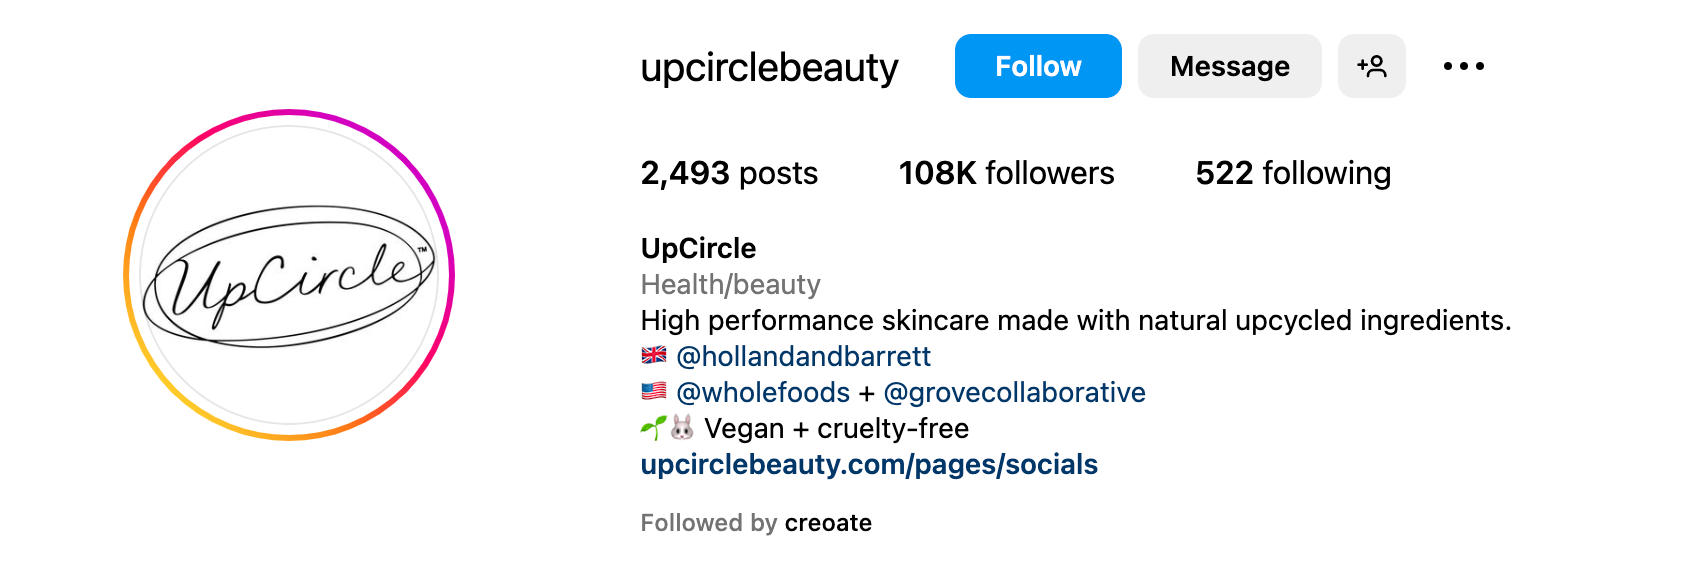 Instagram bio ideas - UpCircle